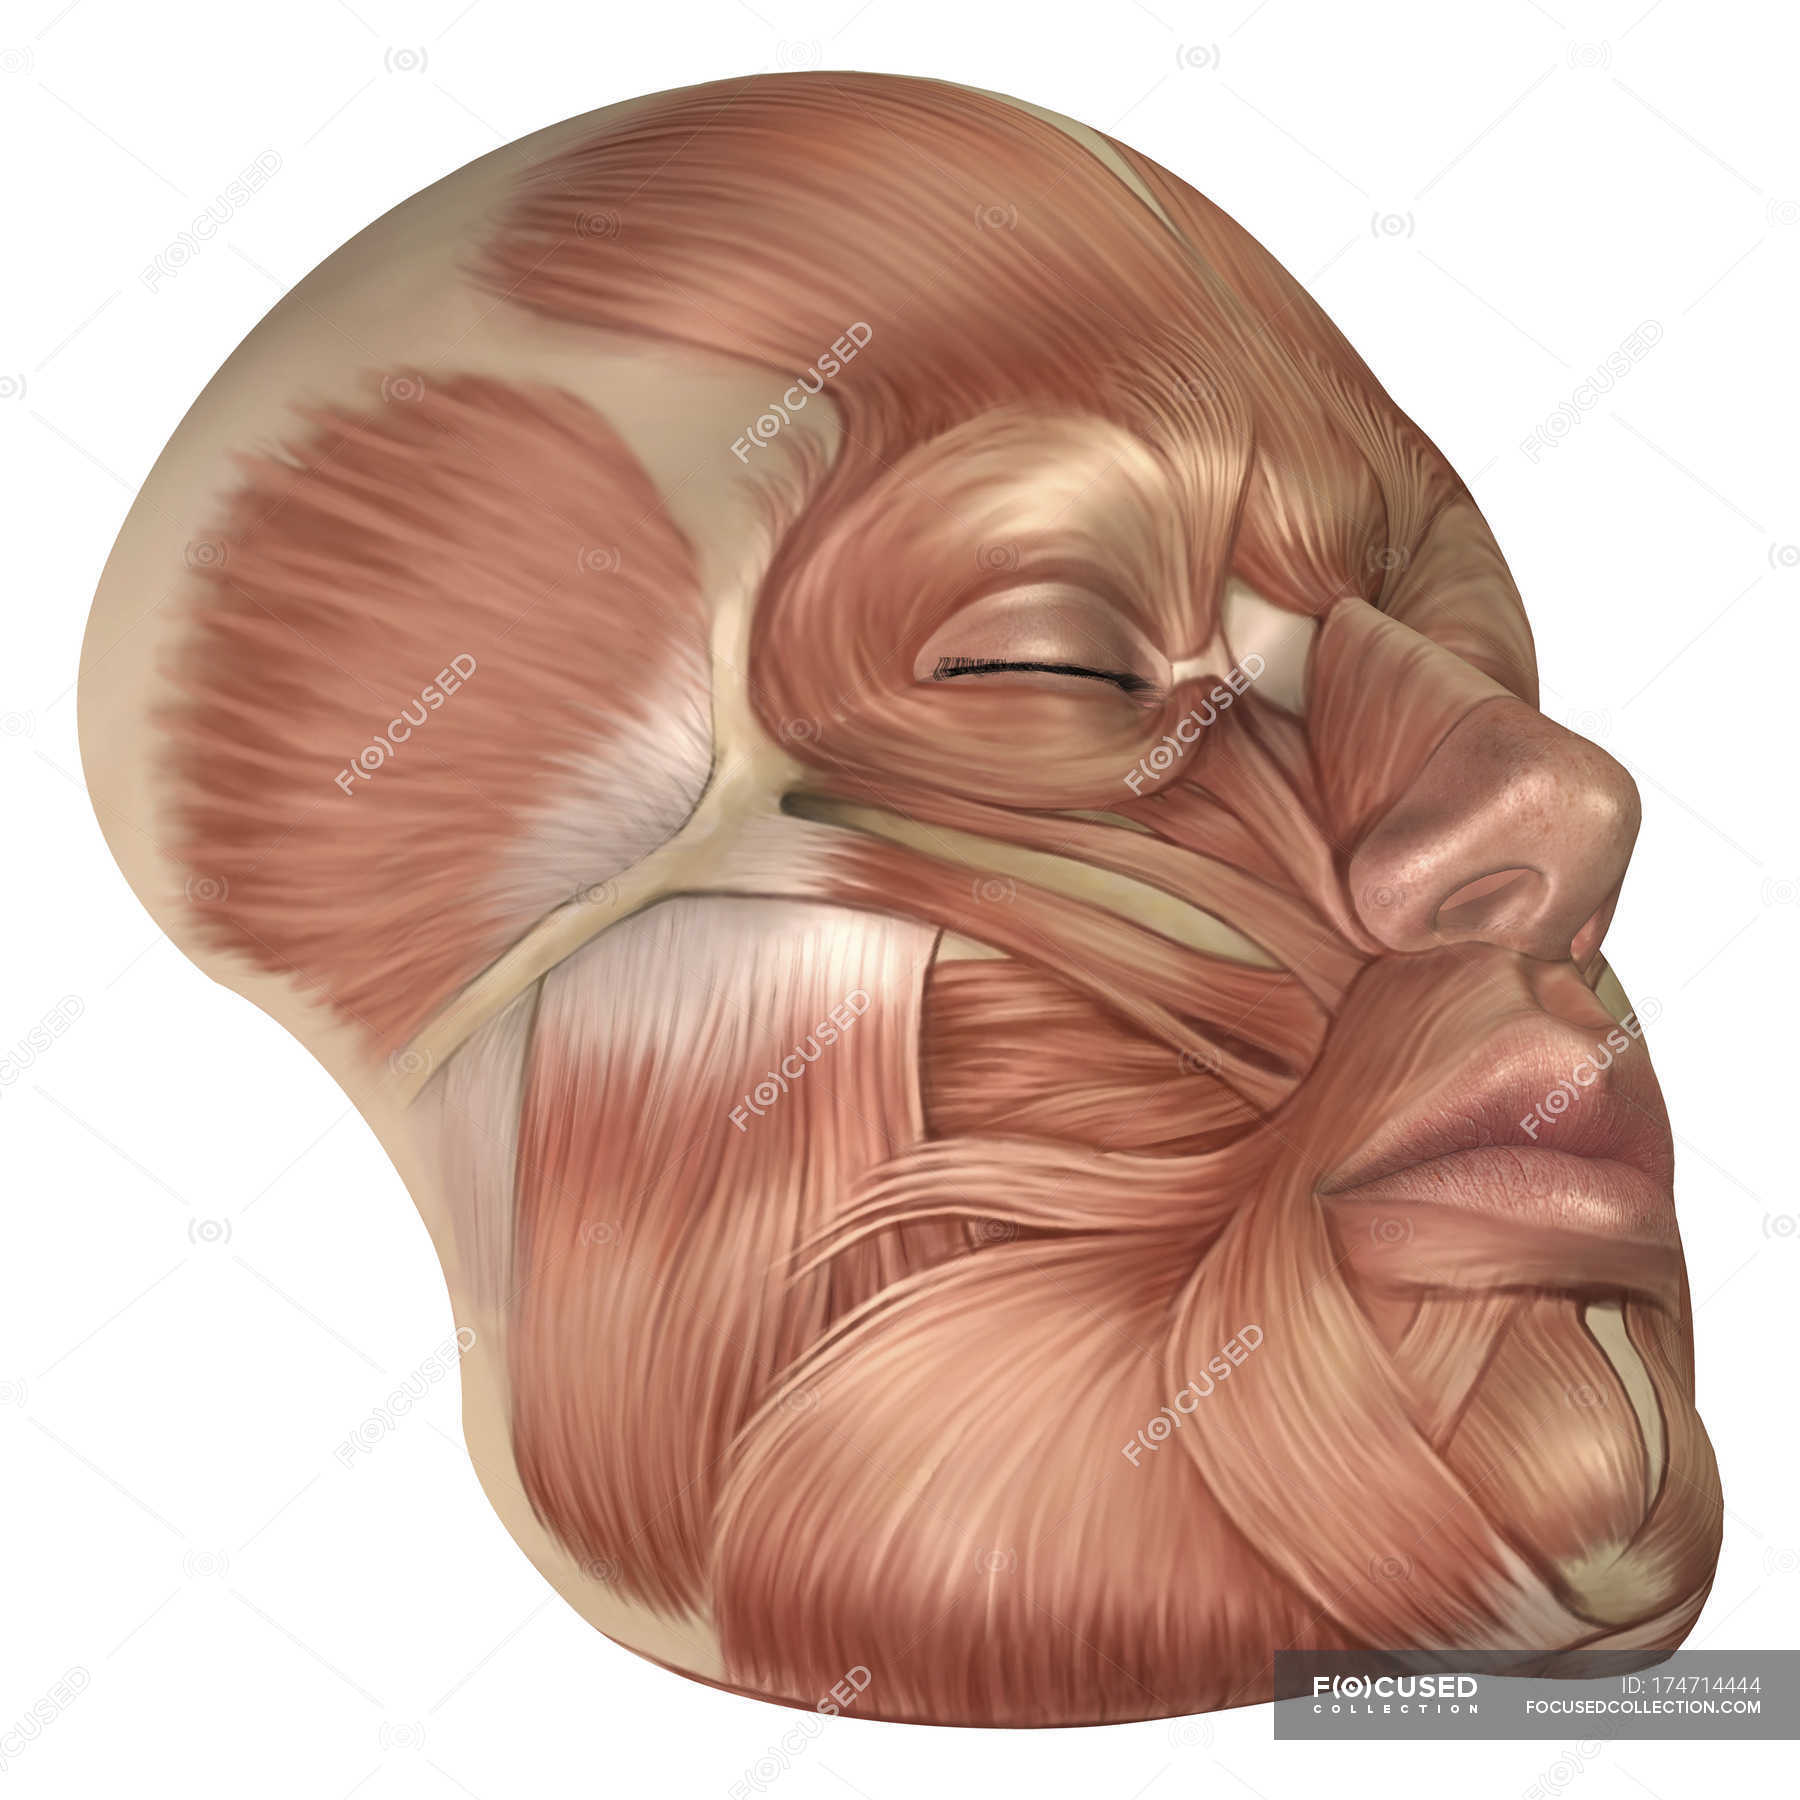 Anatomia dos músculos da face humana — Medicina, rosto Stock Photo